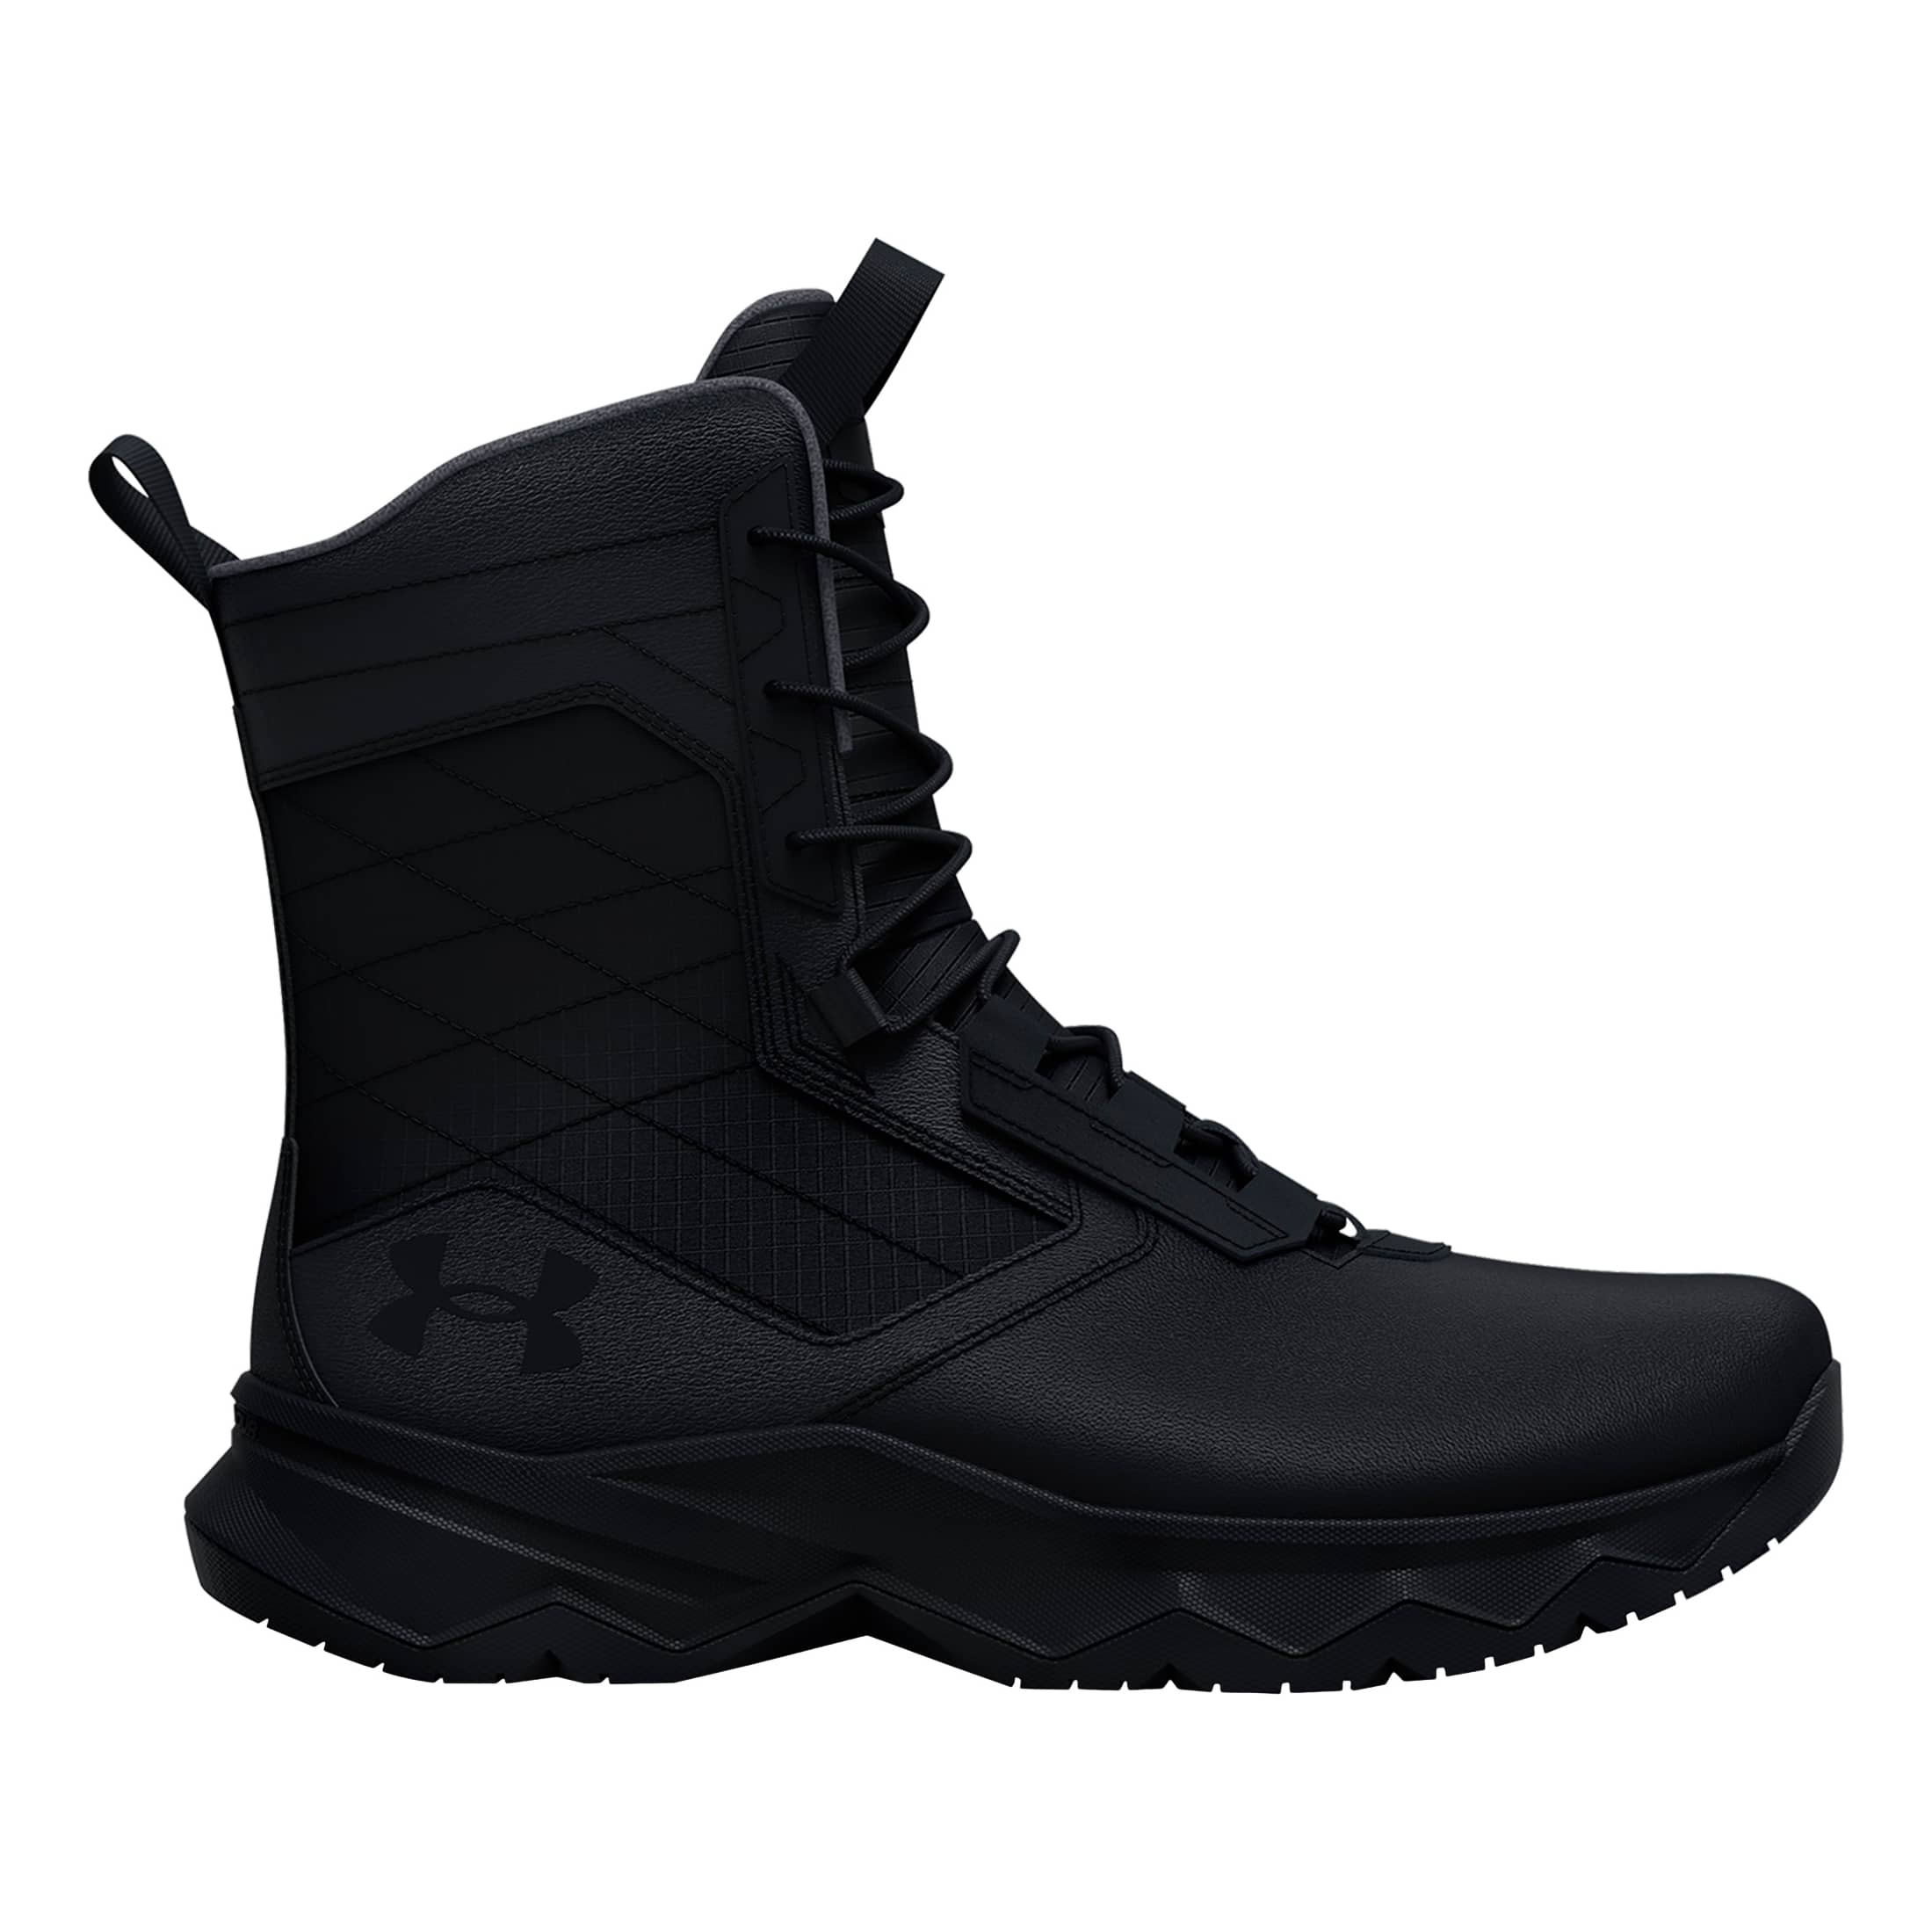 Under Armour® Women's Stellar G2 Tactical Boots